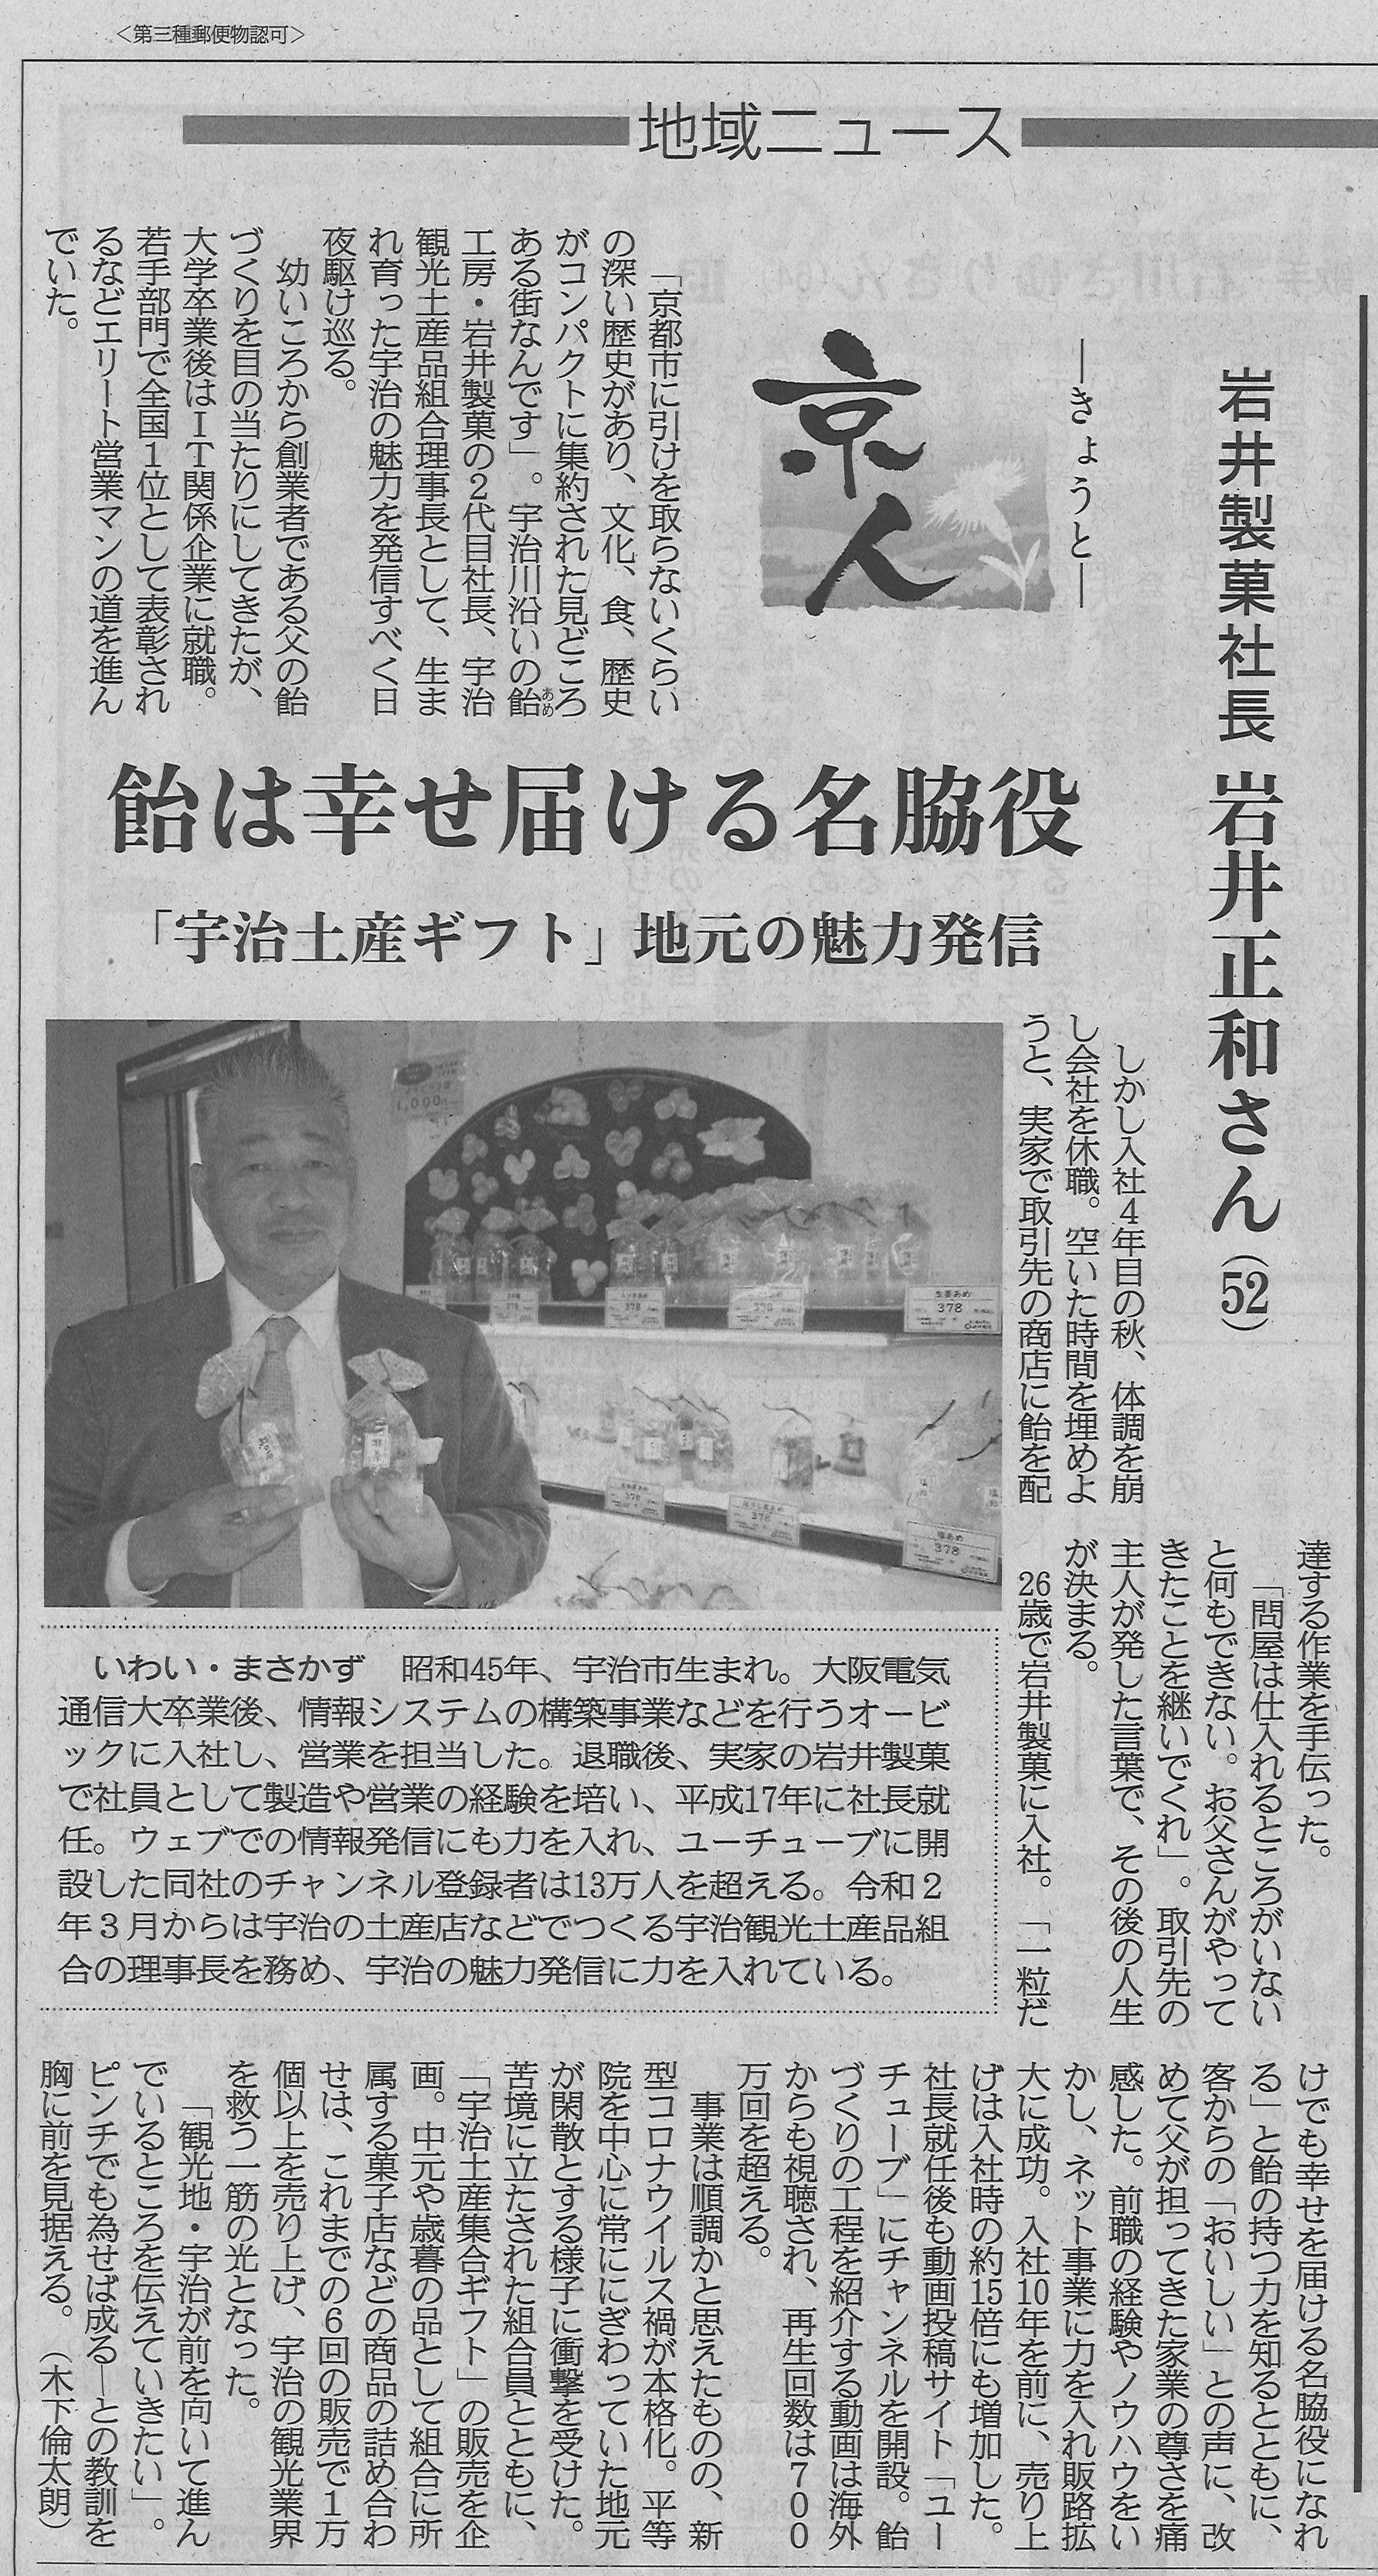 1月16日 産経新聞にて当社社長 岩井正和への取材記事が掲載